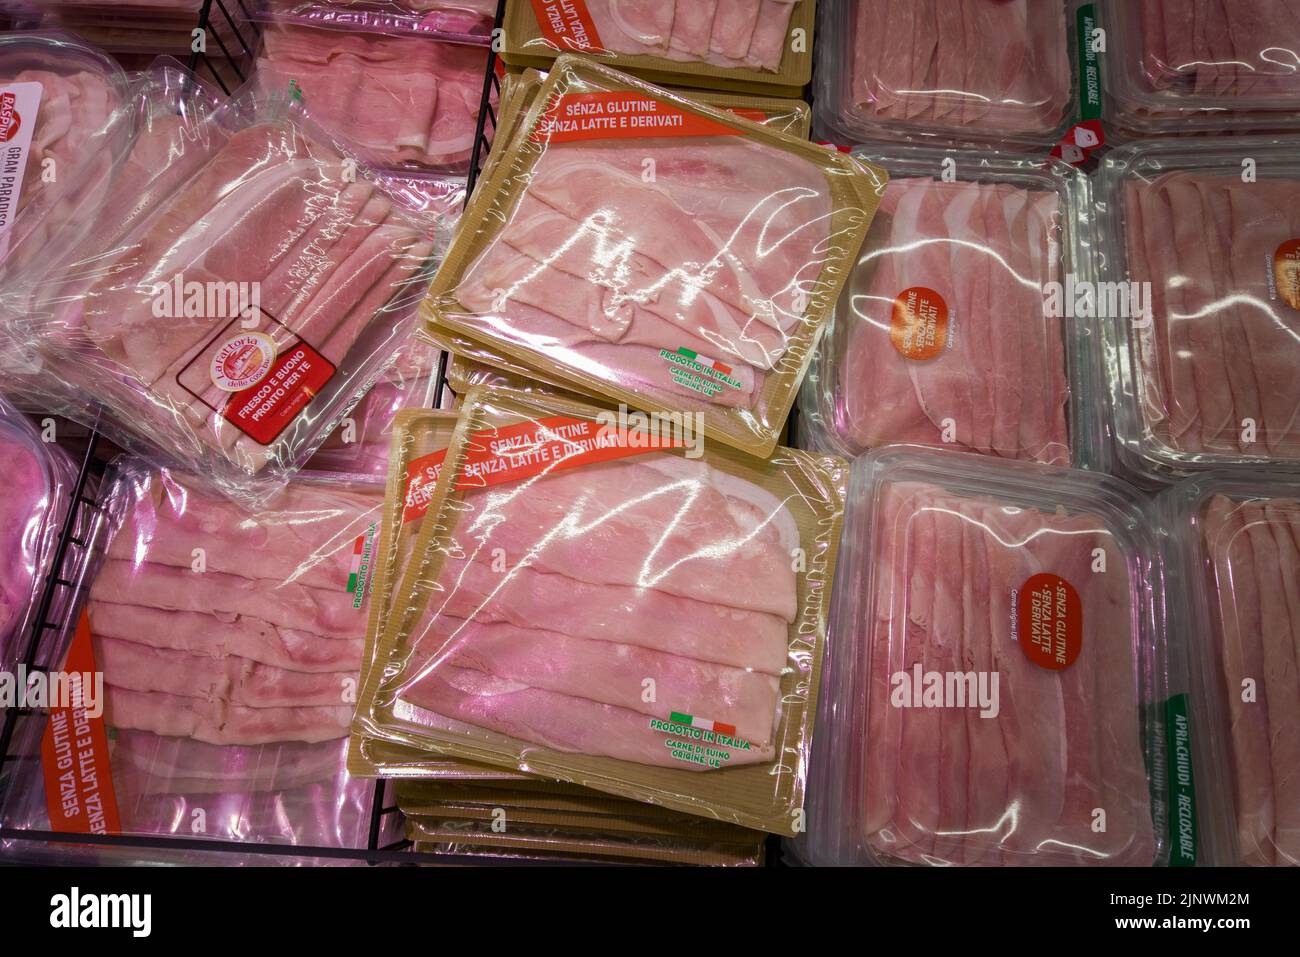 Fossano, Italien - 11. August 2022: Packungen mit glutenfreien gekochten Schinkenscheiben in der Kühltheke des italienischen Supermarkts. Tex:senza glutine senza l Stockfoto